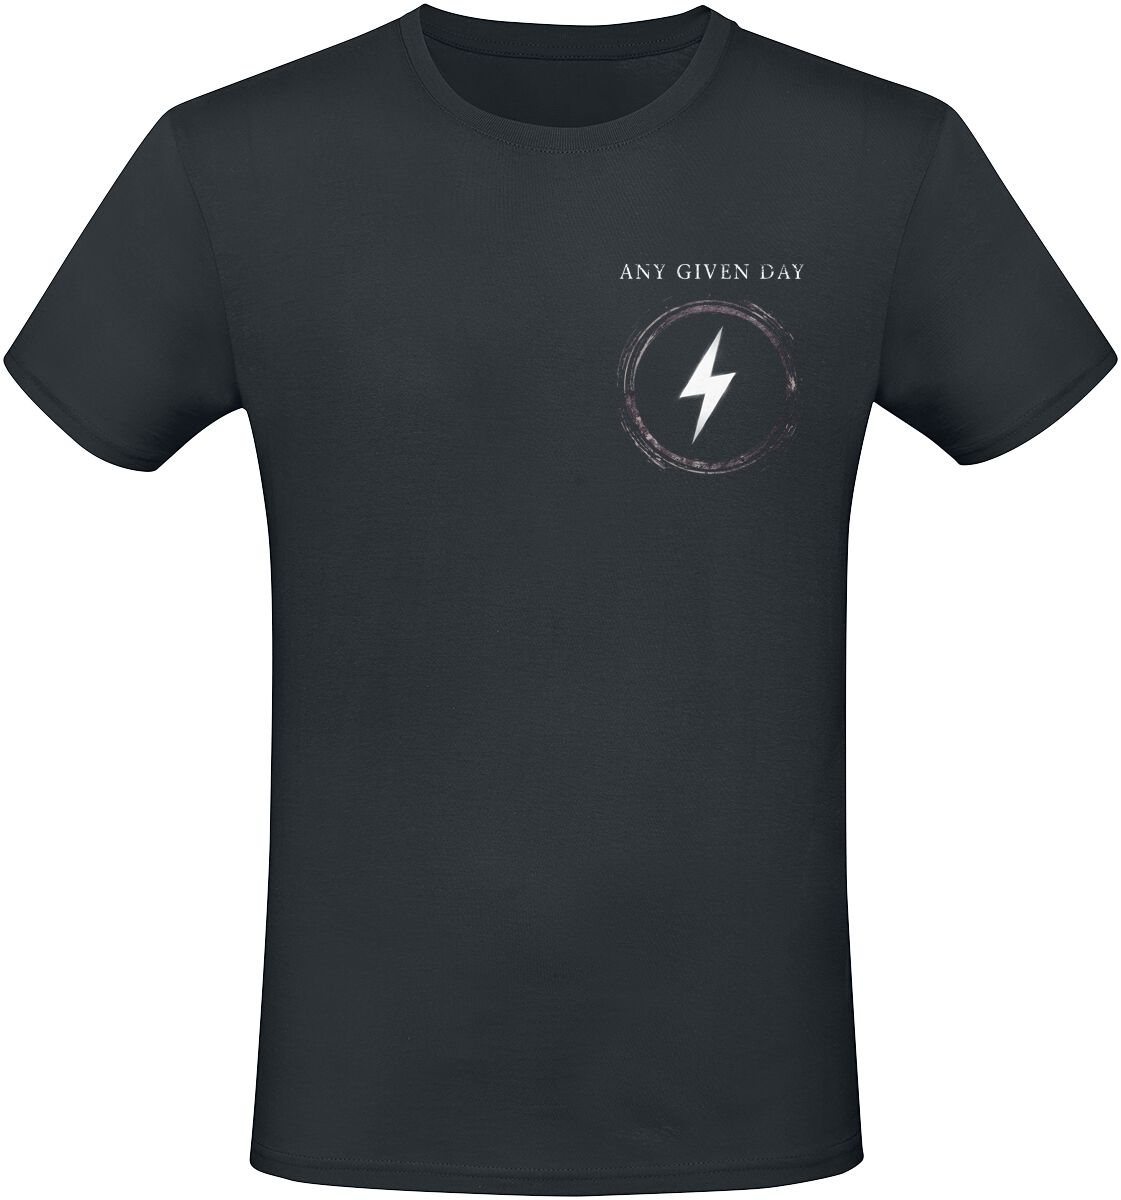 Any Given Day T-Shirt - Overpower - S bis L - für Männer - Größe S - schwarz  - EMP exklusives Merchandise!